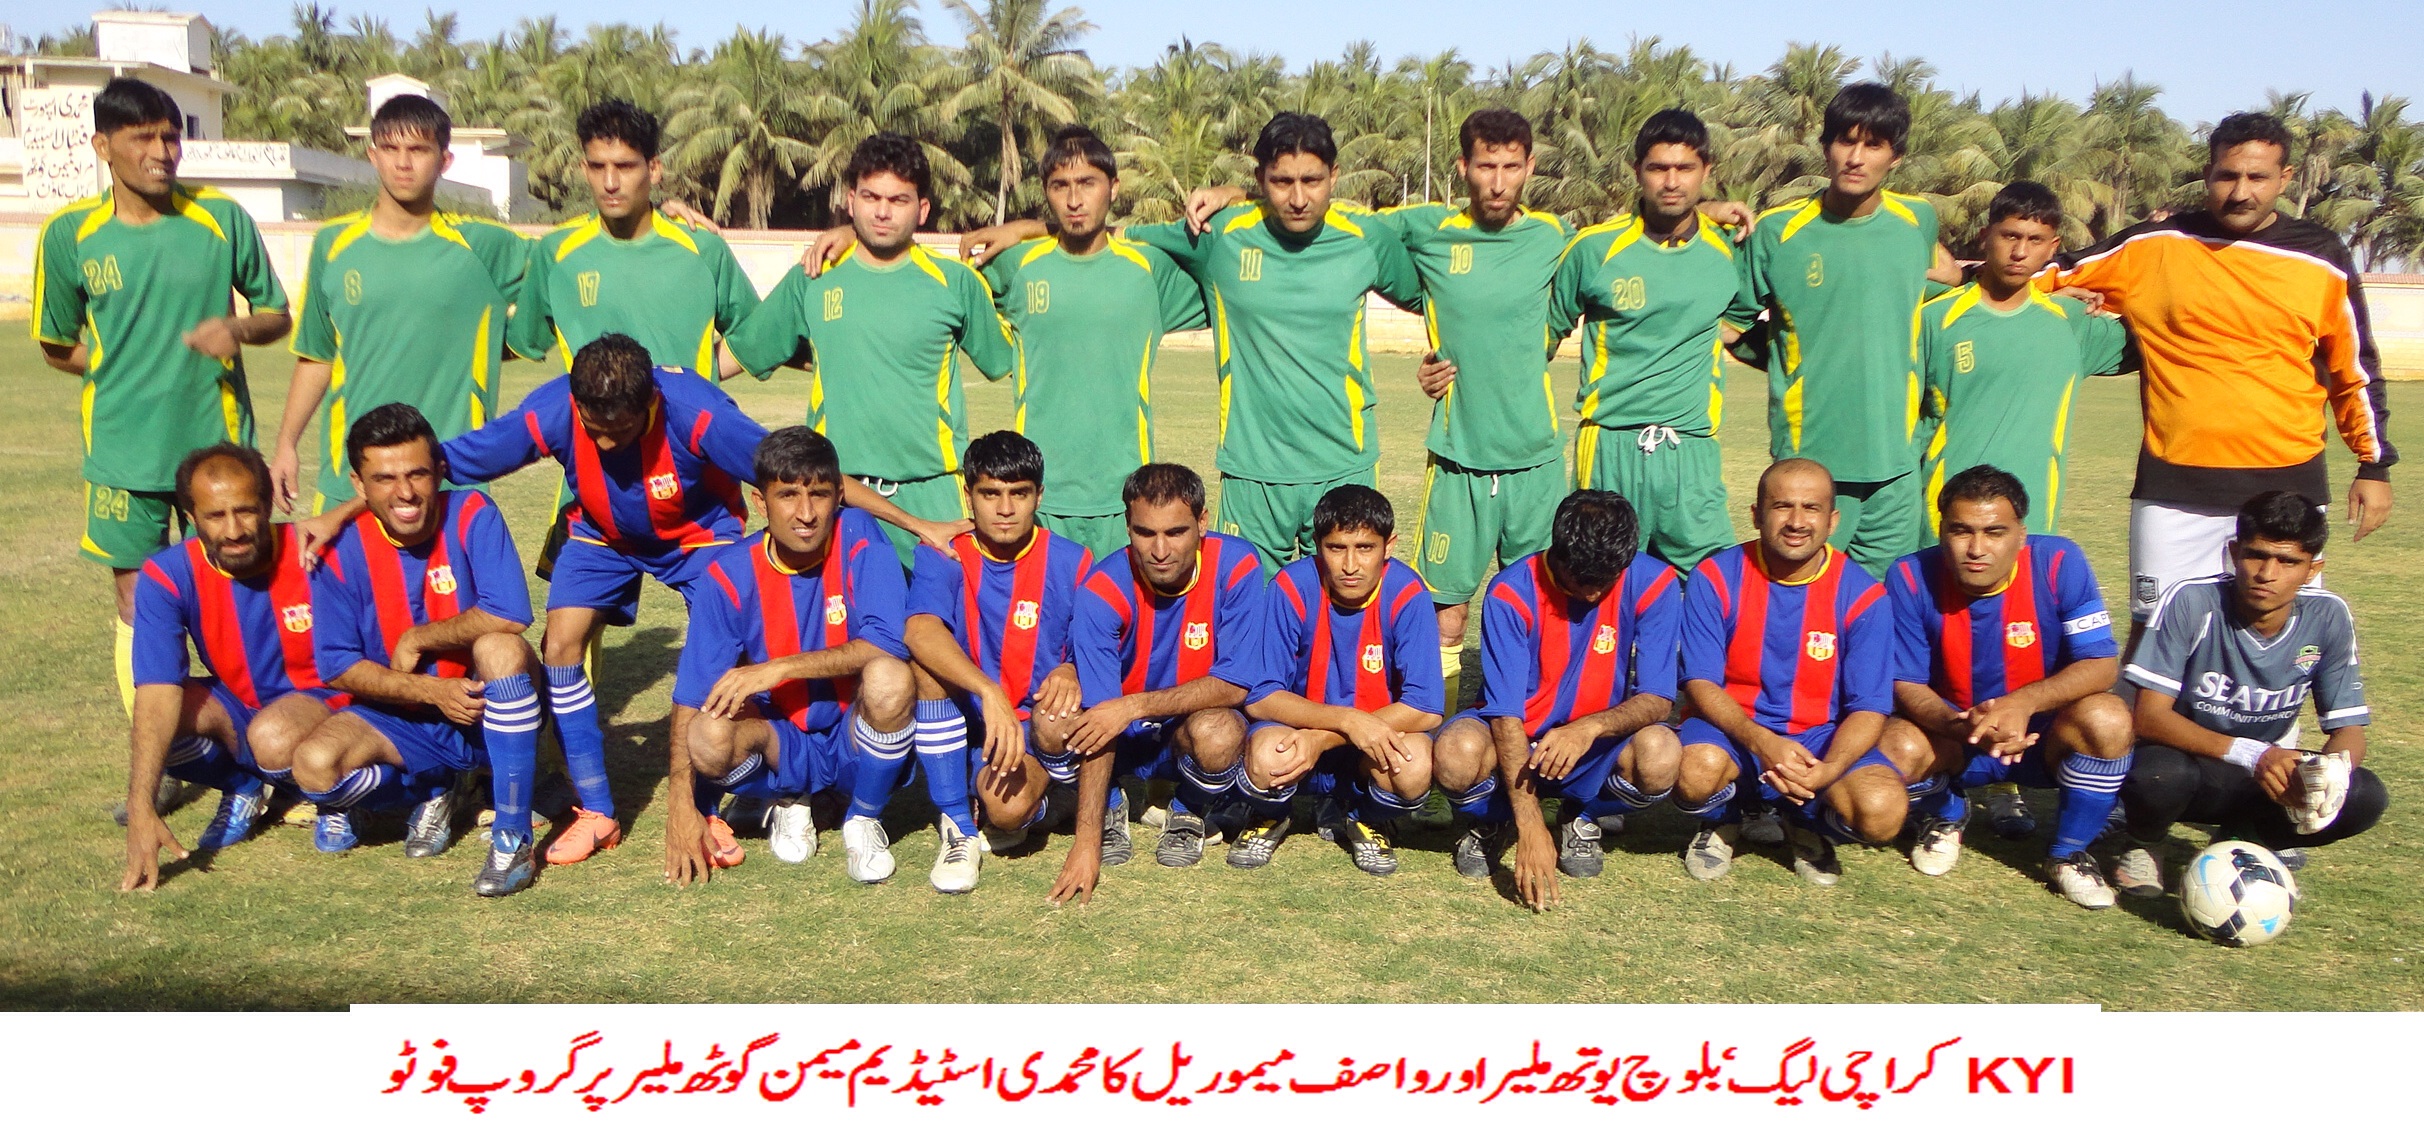 Karachi football League update